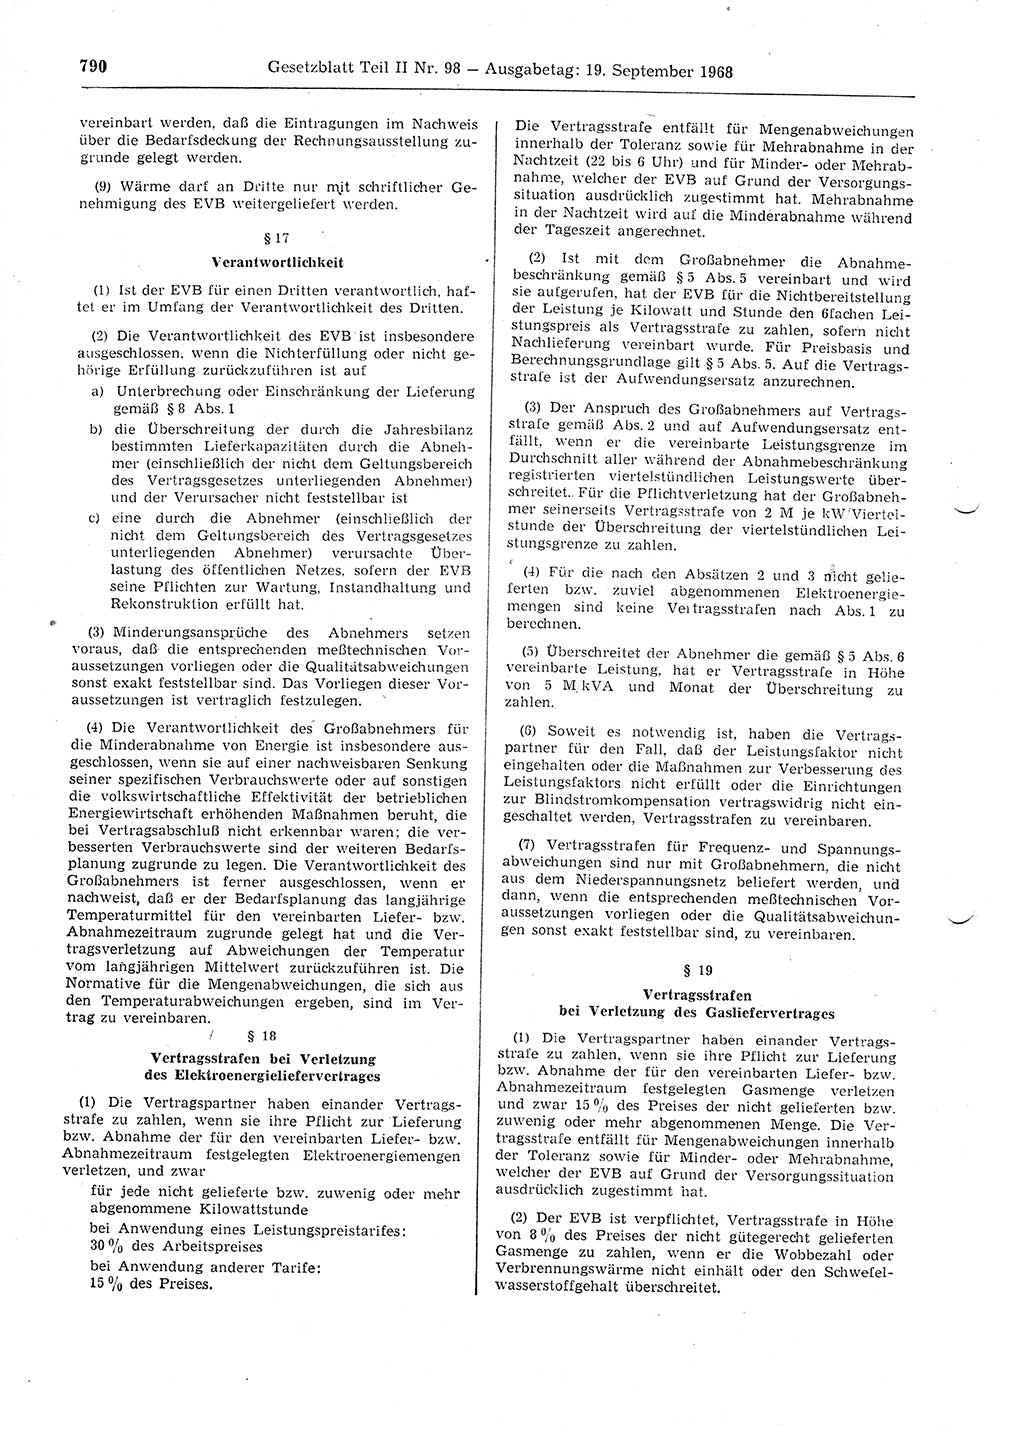 Gesetzblatt (GBl.) der Deutschen Demokratischen Republik (DDR) Teil ⅠⅠ 1968, Seite 790 (GBl. DDR ⅠⅠ 1968, S. 790)